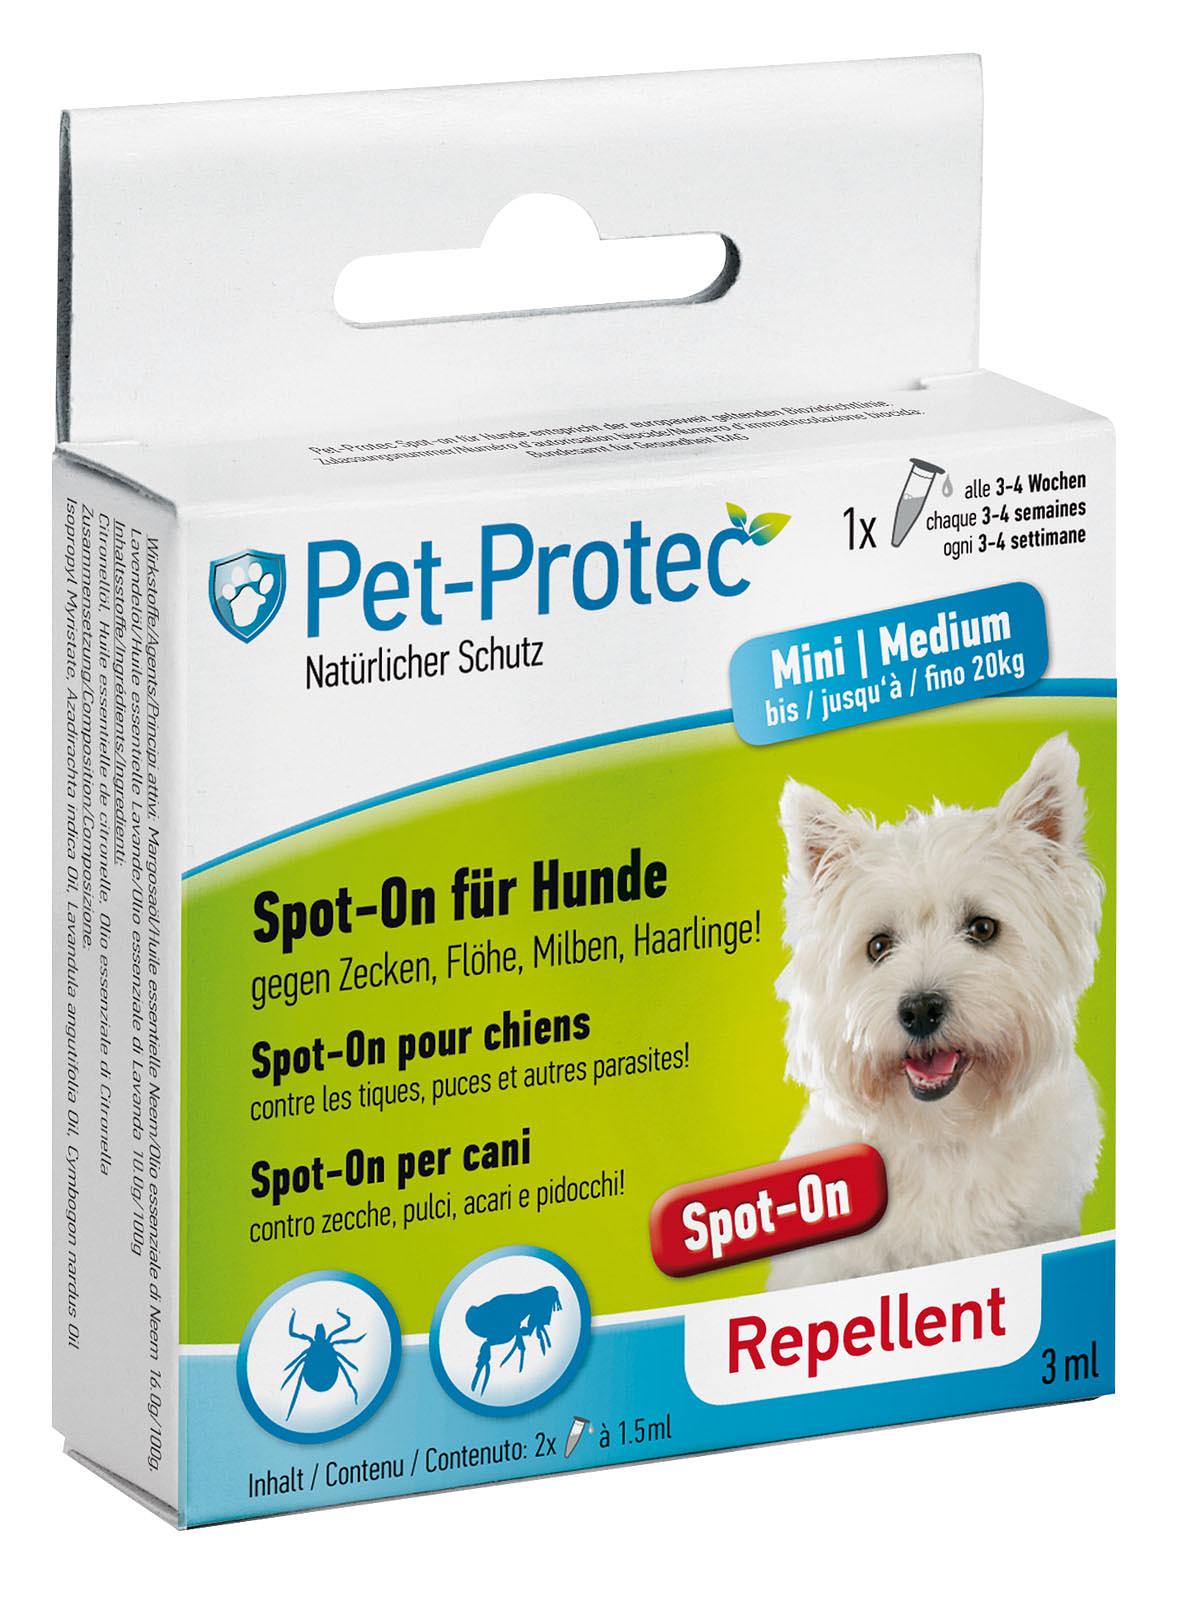 Pet-Protec Spot-On pour chiens Medium